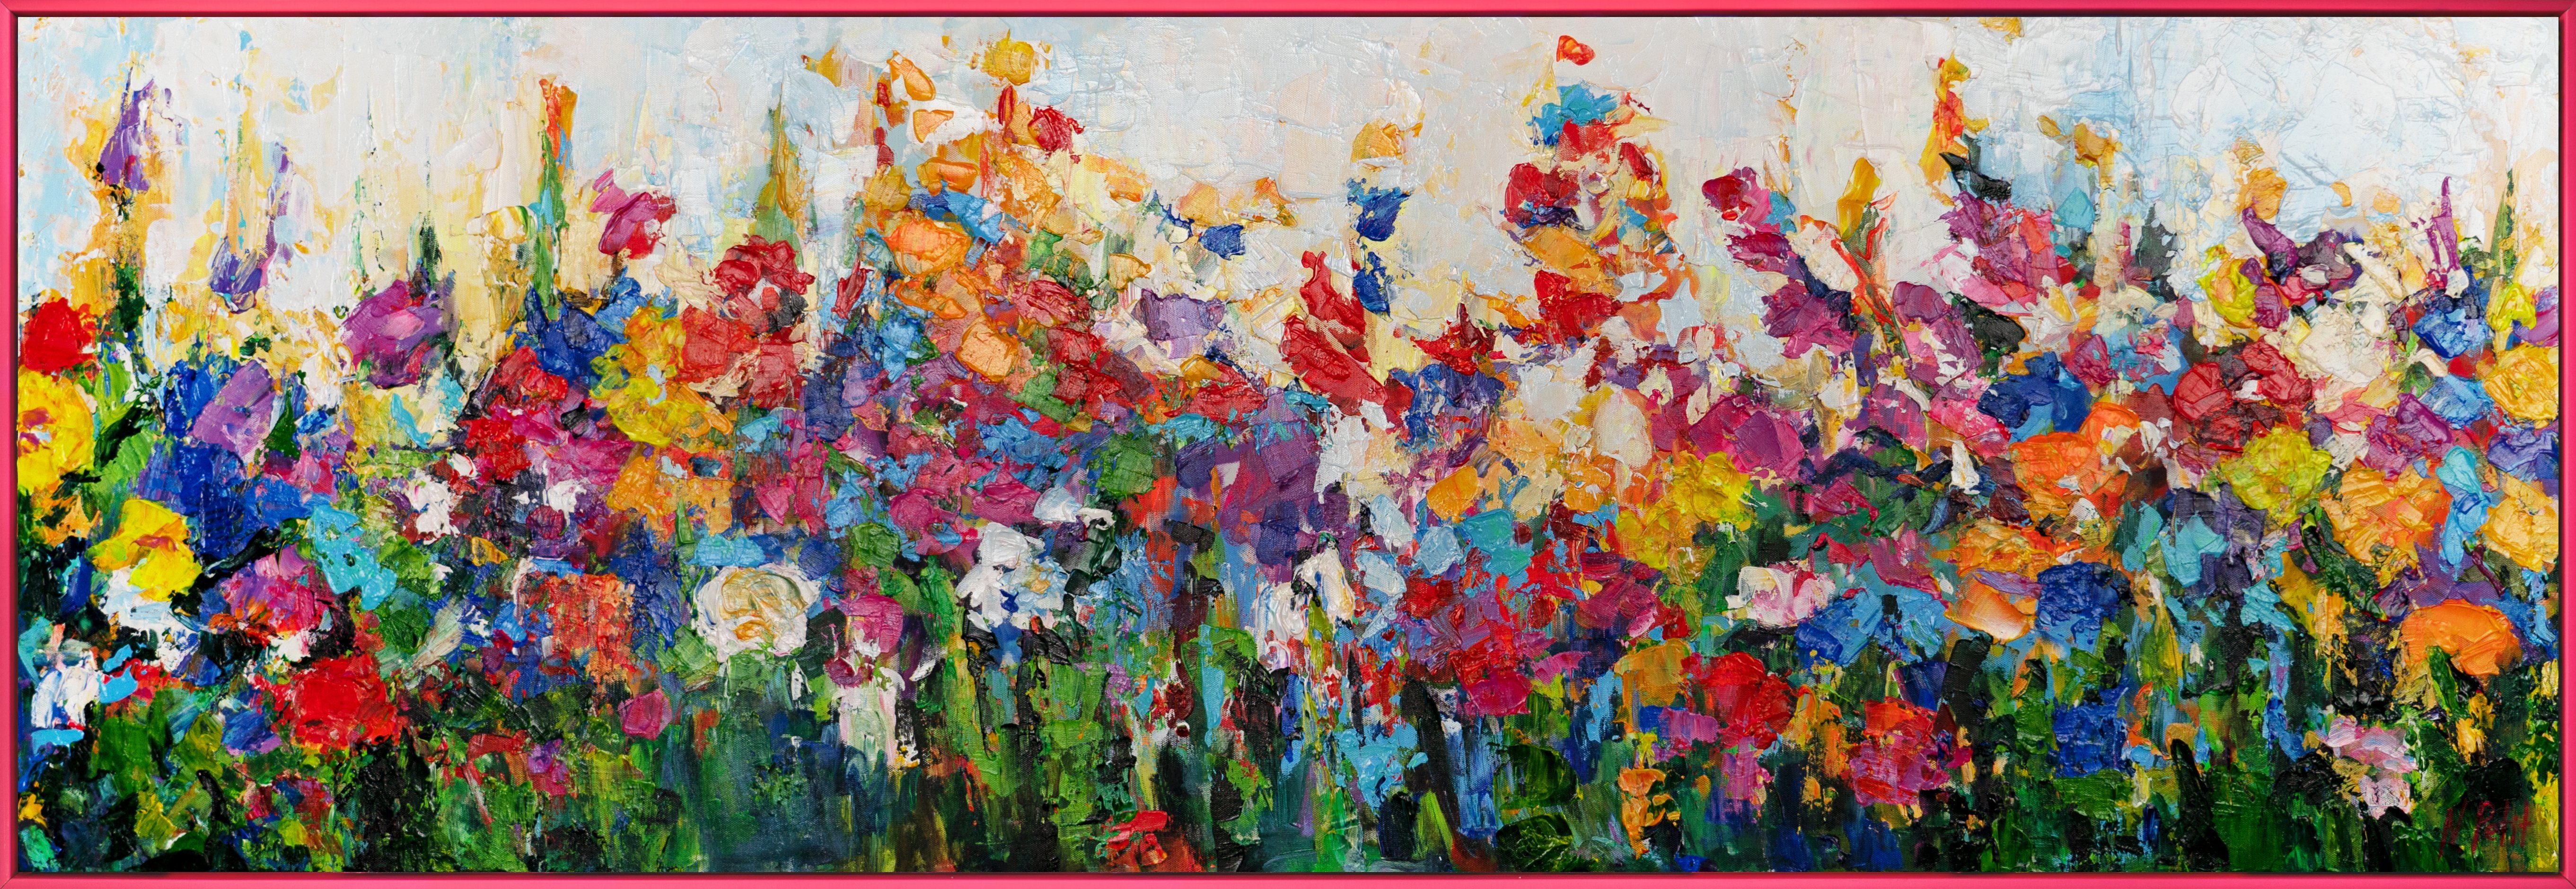 YS-Art Gemälde Wirbelwind der Feldfarben, Blumen Mit Rahmen in Rosa